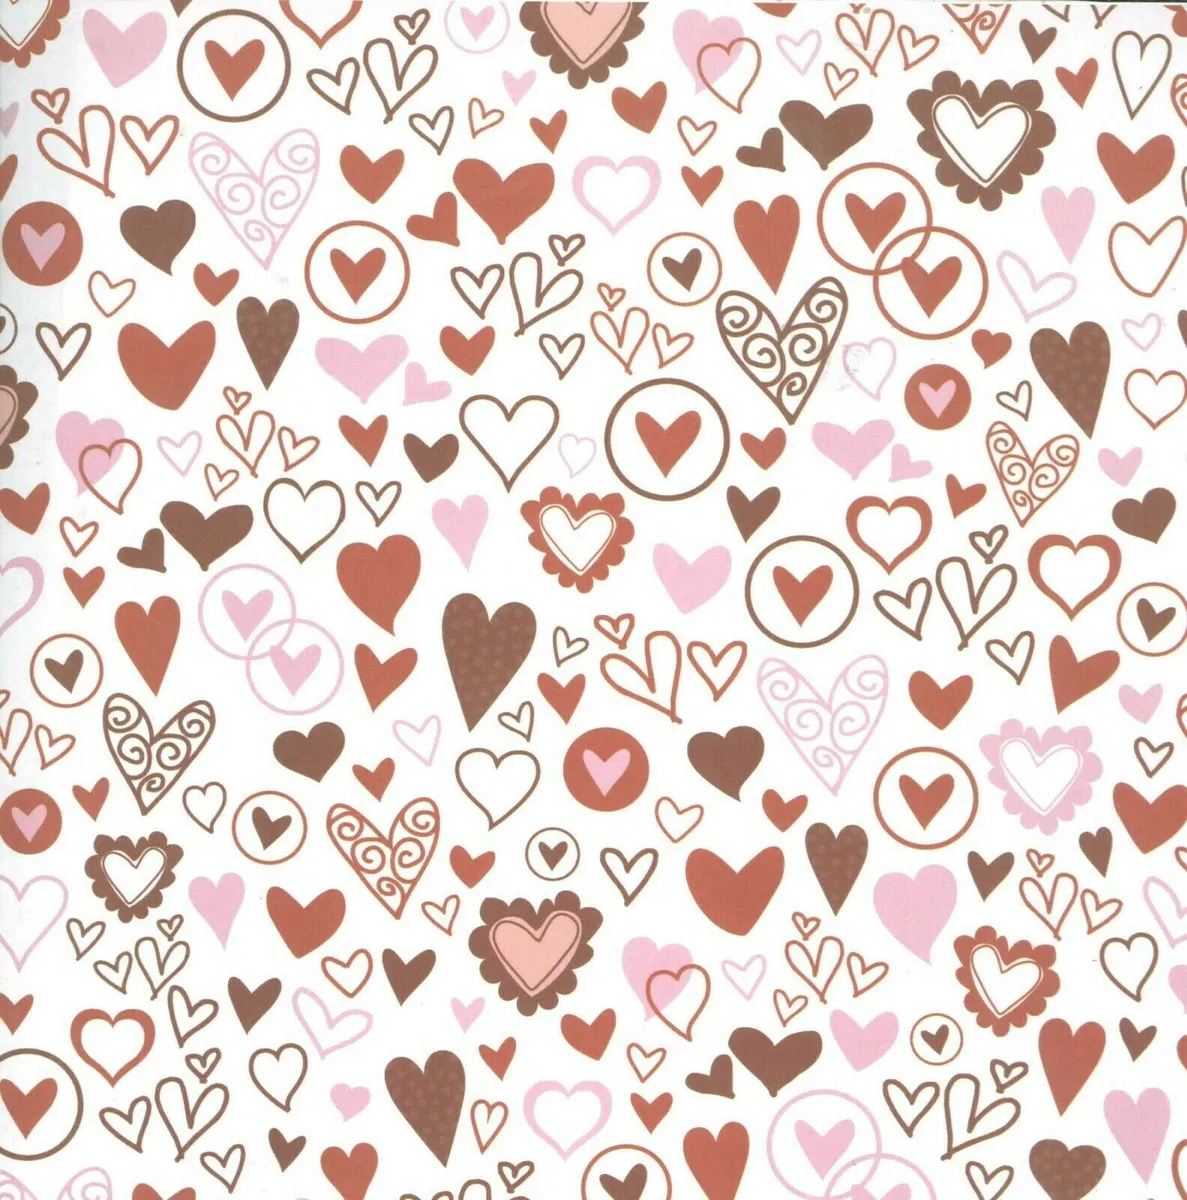 HEARTS 12 x 12 Valentine Valentine's Day Red Pink Heart Love Scrapbook Paper